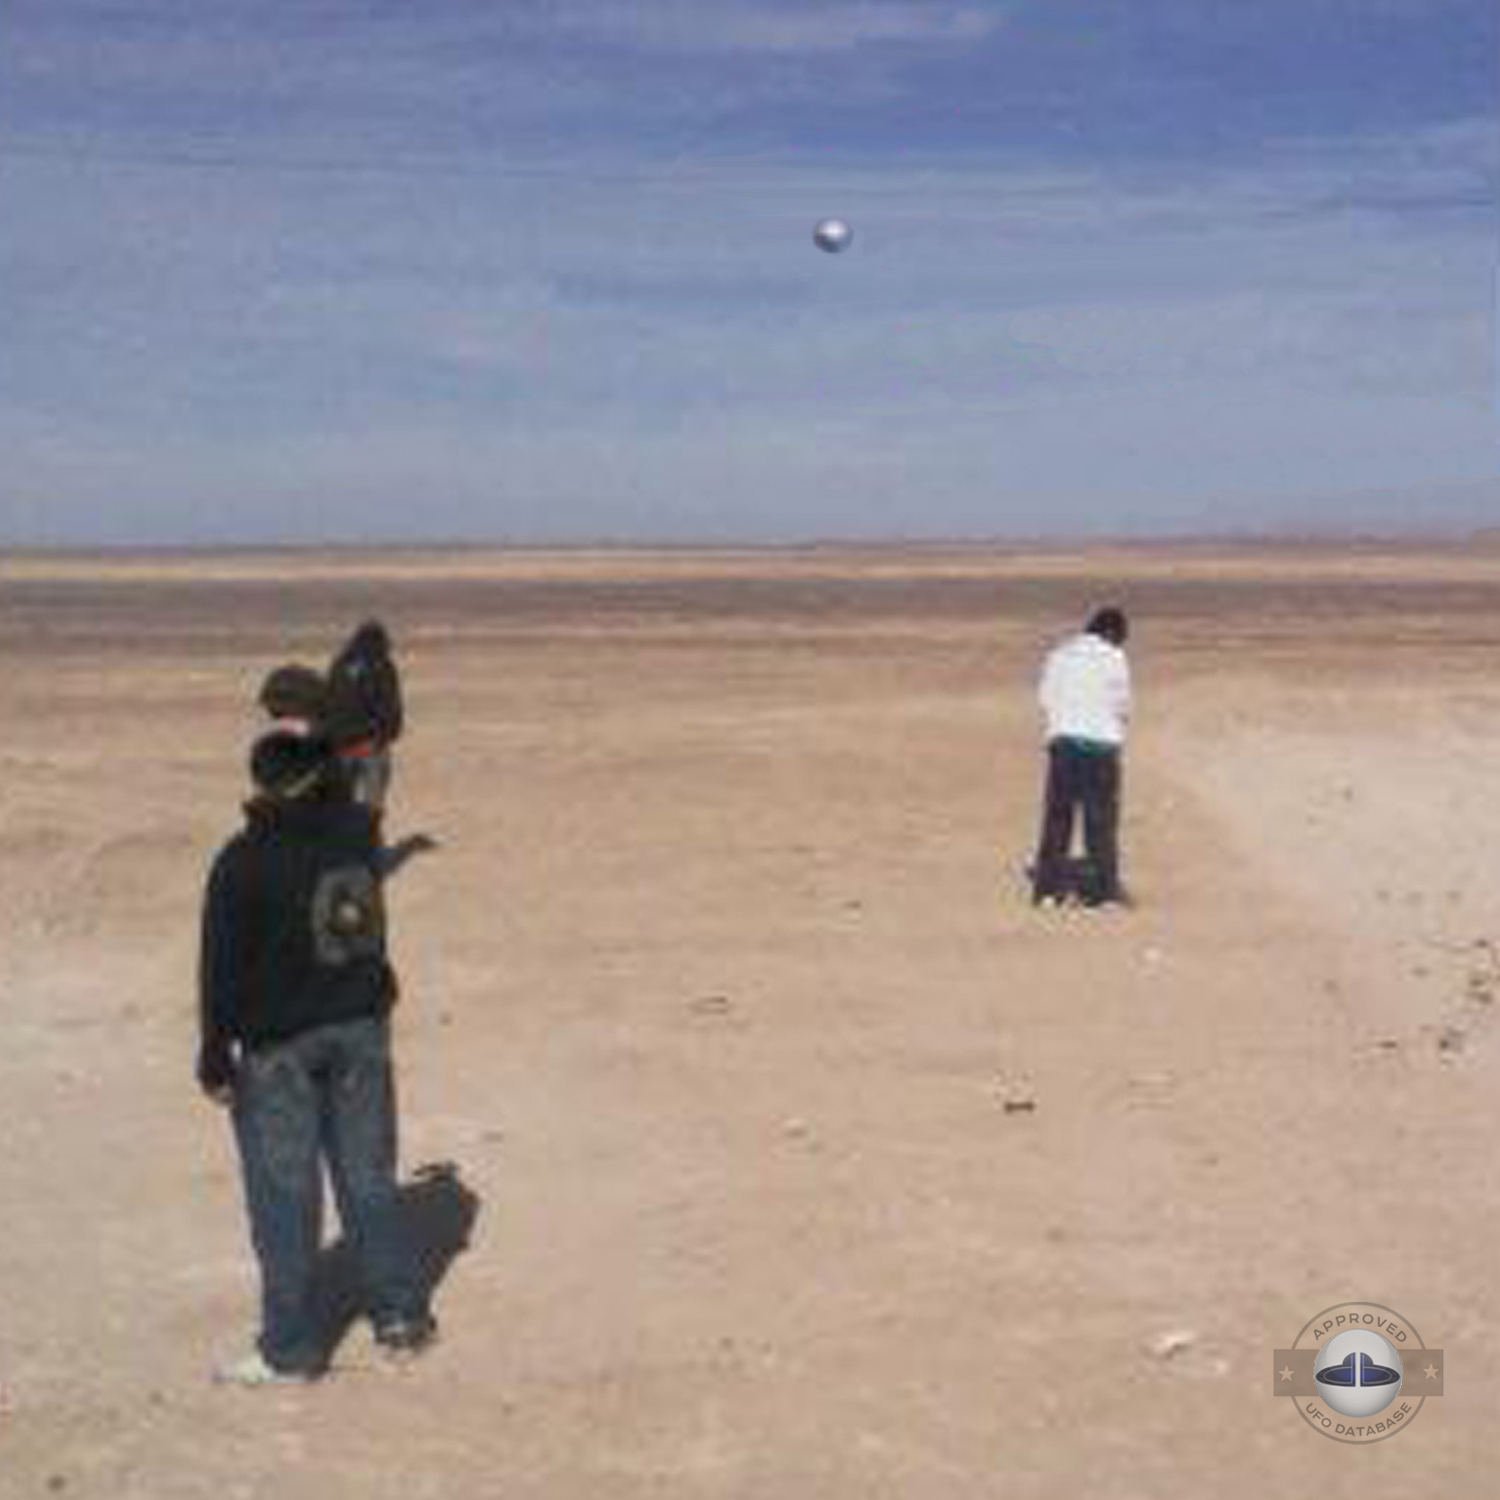 Silver metallic UFO probe in the desert of Chile | Iquique April 2010 UFO Picture #221-2